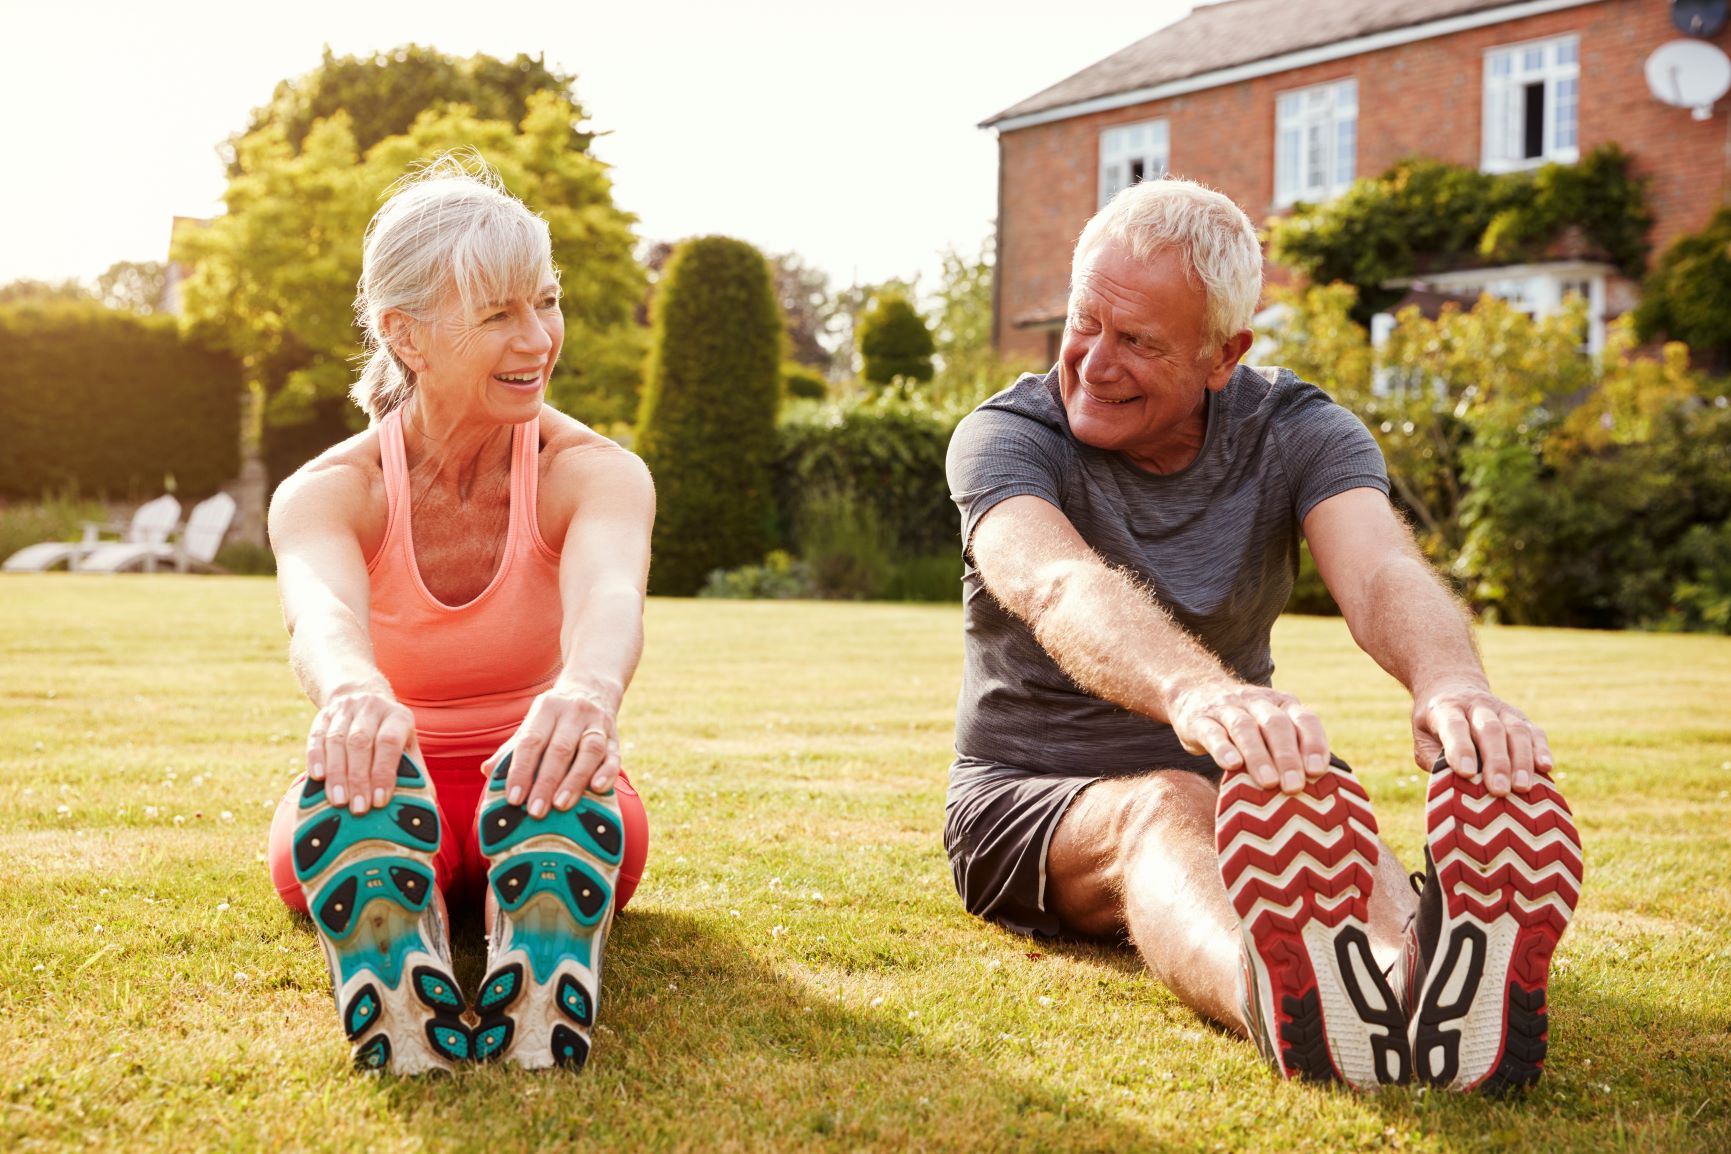 healthy-senior-couple-exercising-in-garden-togethe-2021-04-02-19-59-57-utc